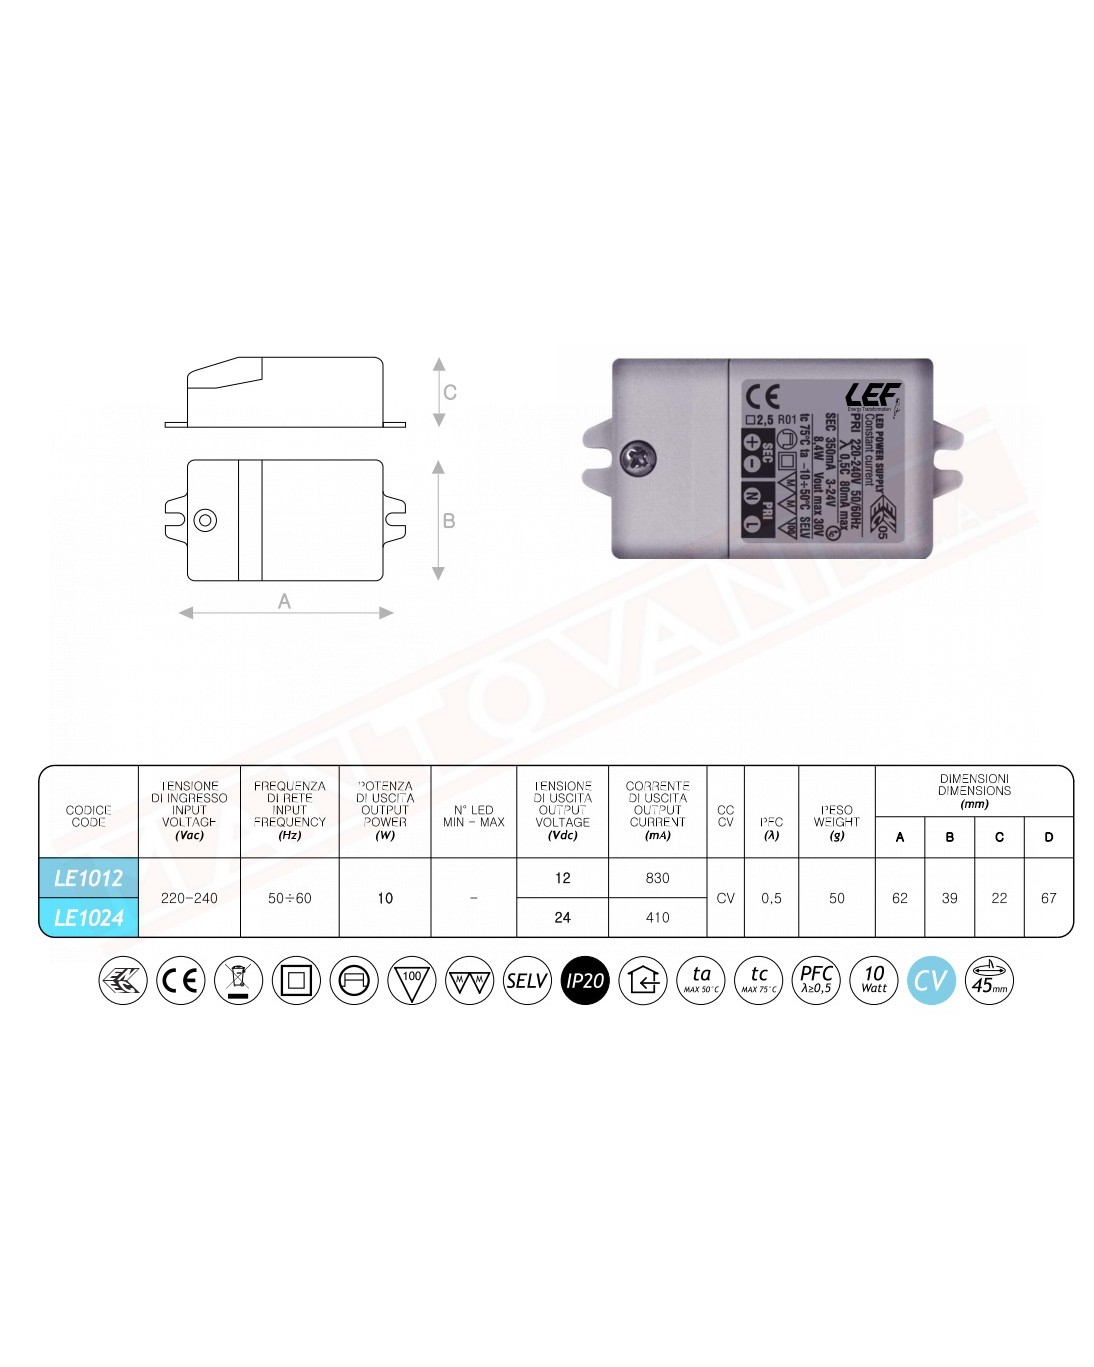 Lef alimentatore per led tensione costante 24V 10W corrente max 410 MA 62X39X22 MM IP20